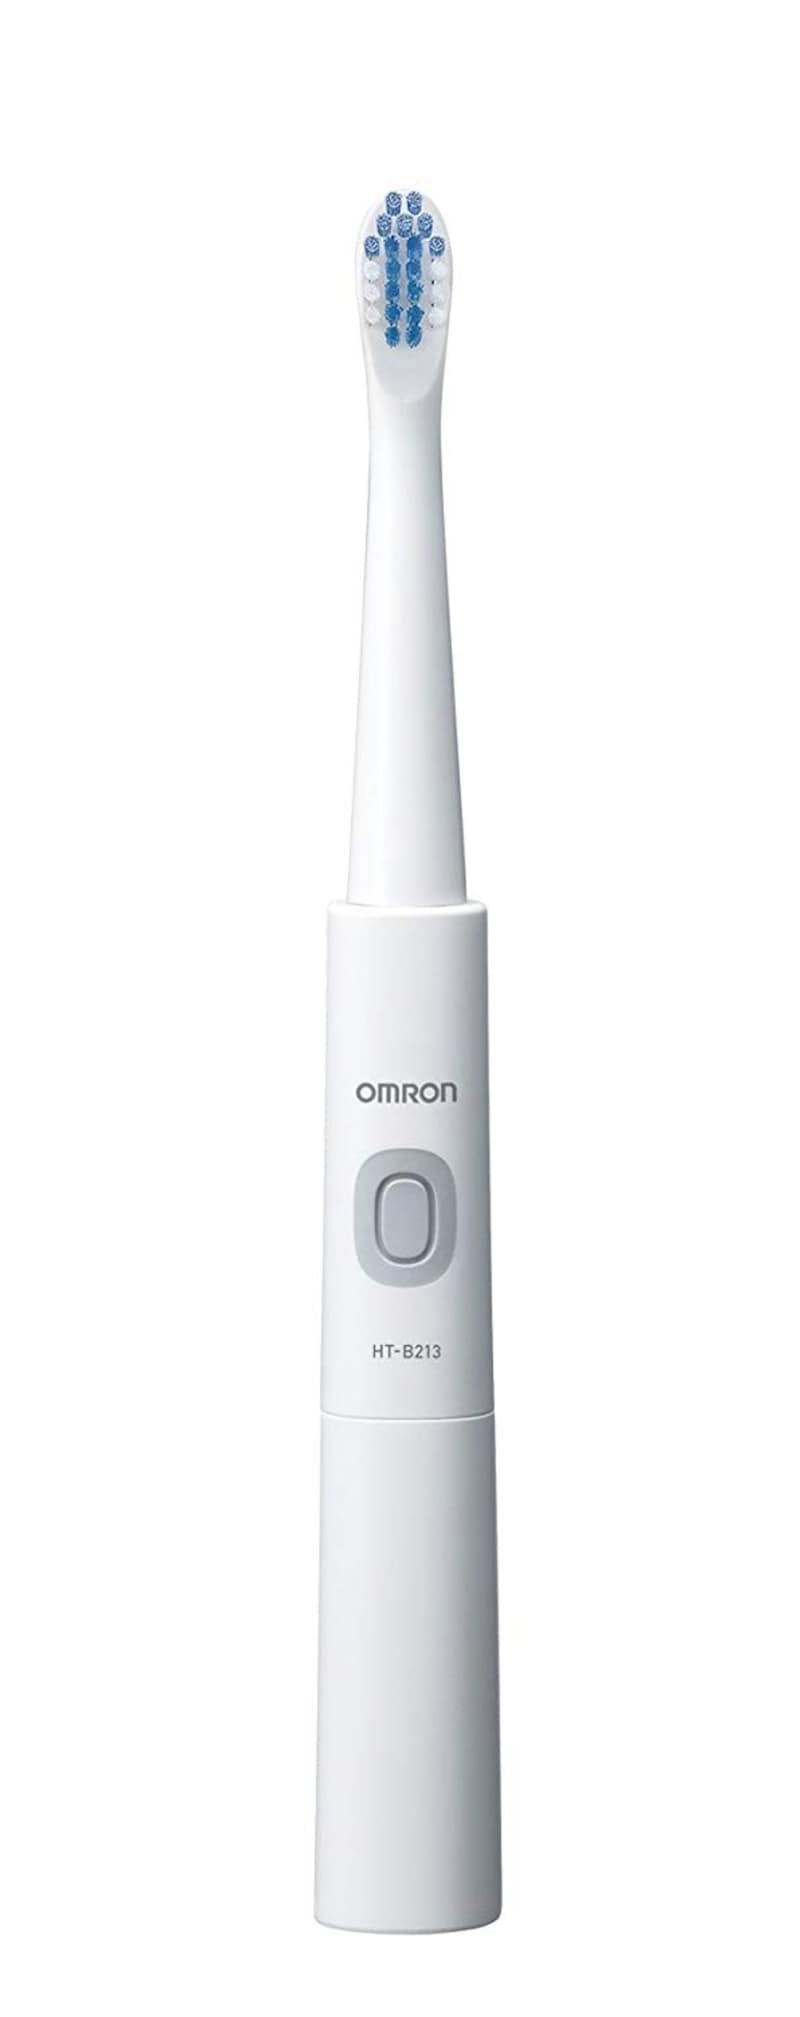 オムロン,電動歯ブラシ,HT-B213-W